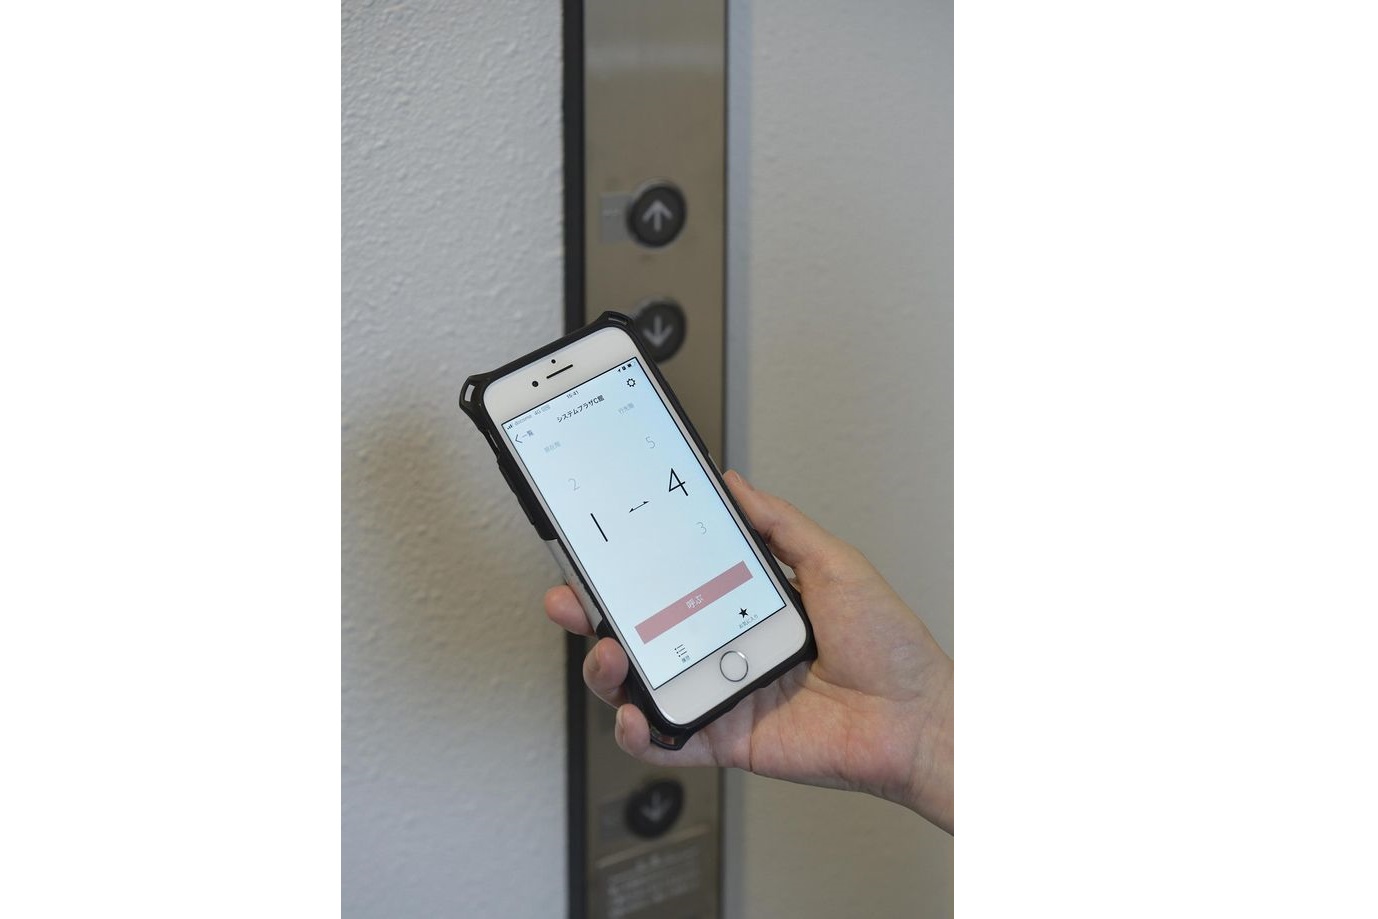 専用アプリをダウンロードしたスマートフォンを携えてエレベーターに近づくだけで、ハンズフリーでかご呼び出し・行先階の自動登録が可能